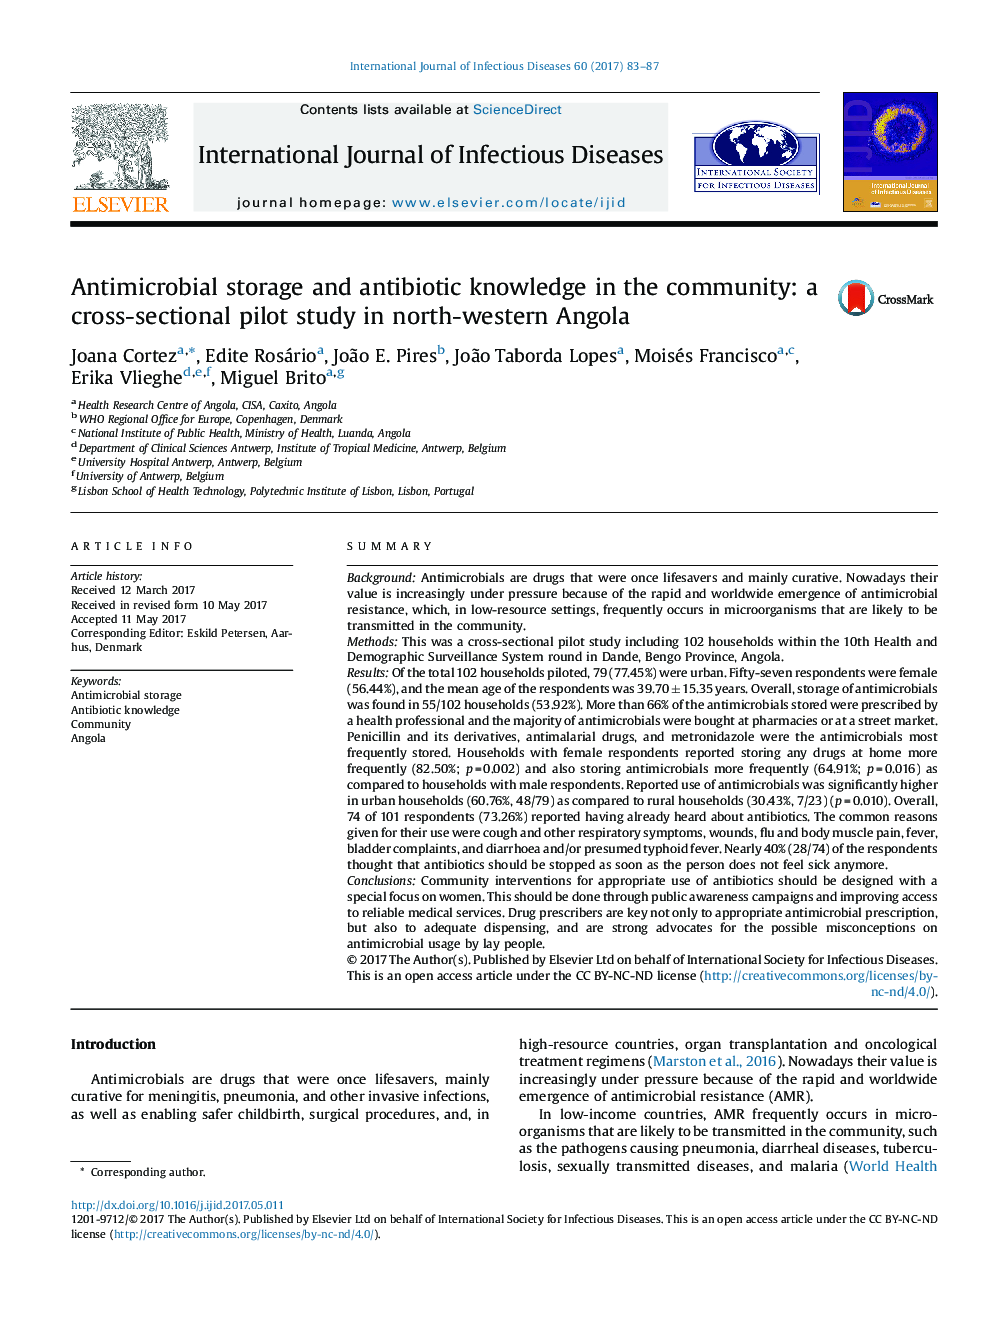 ذخیره سازی ضد میکروبی و دانش آنتی بیوتیک در جامعه: یک مطالعه آزمایشی مقطعی در شمال غرب آنگولا 